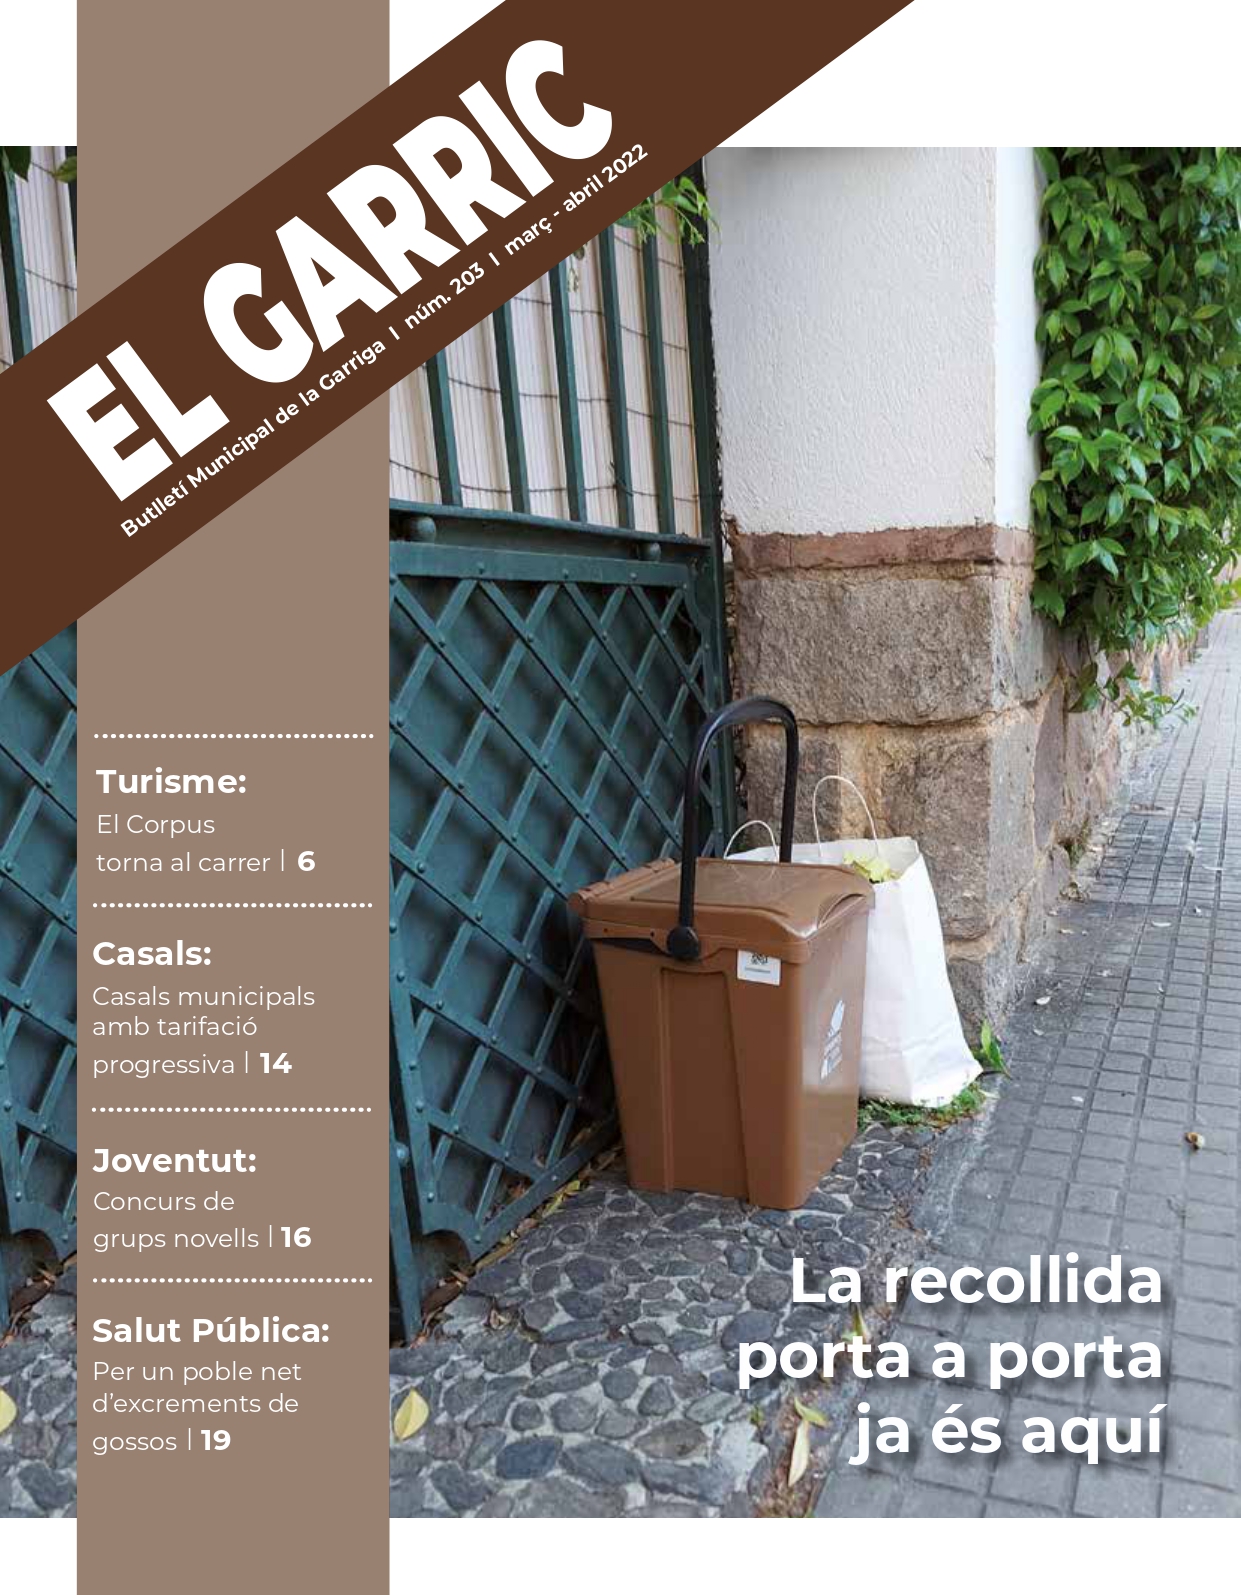 La recollida porta a porta, a la portada del Garric